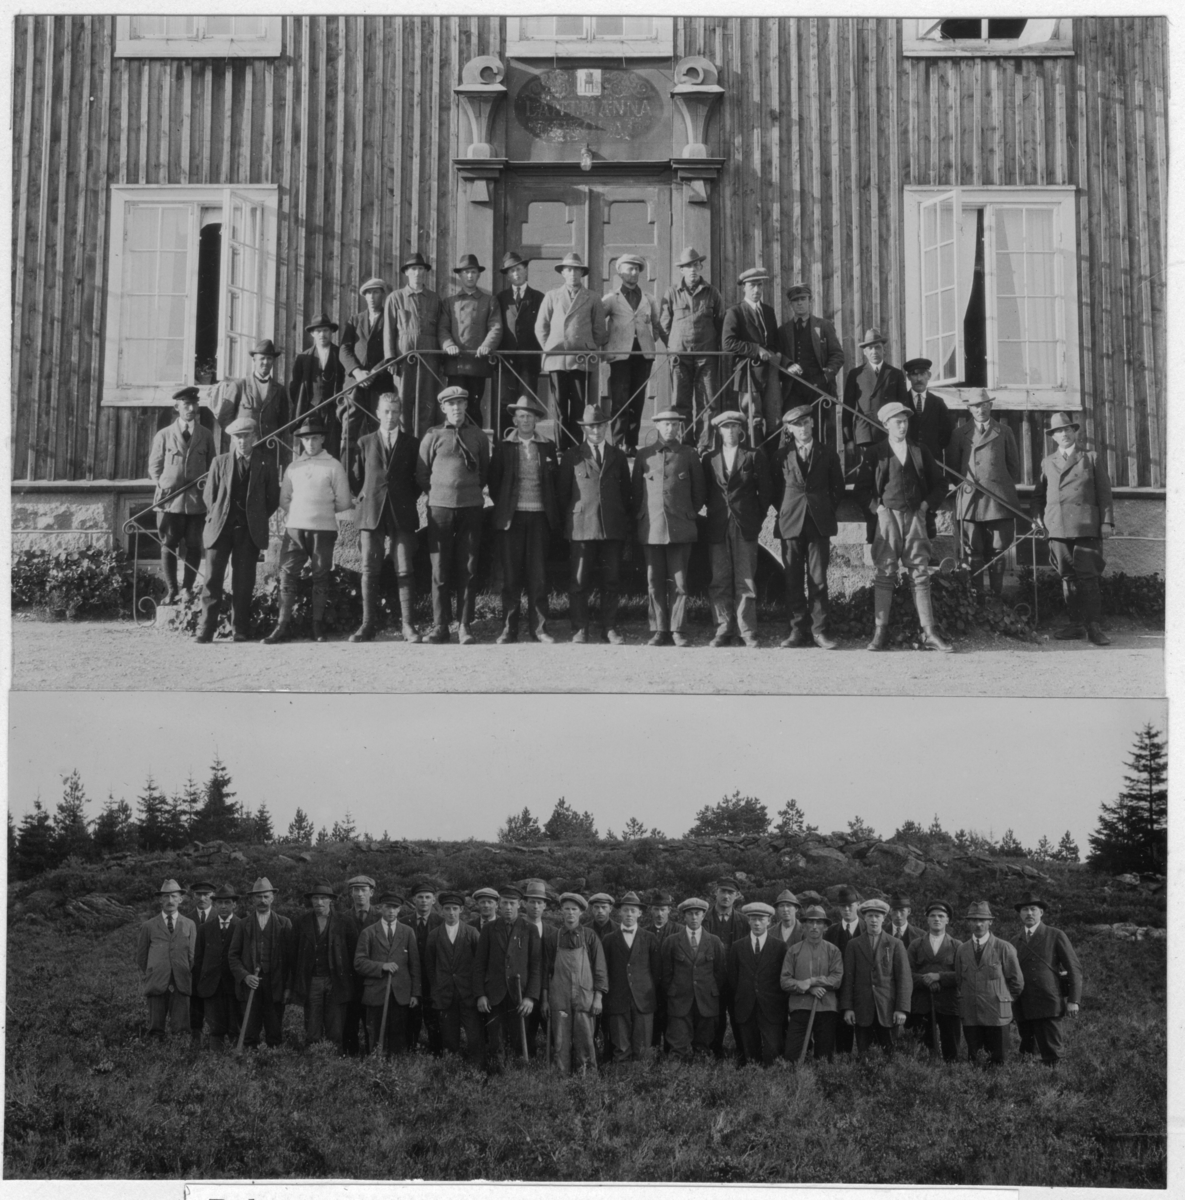 'Bildtext: ''Deltagarna i skogsplantörskursen i Dingle år 1926.'' Övre bilden: 26 män samlade på och framför trappa med räcke till trähus. Nedre bilden: 27 män ute i fält, gruppbild. ::  :: Fotonr. 7048:47-58 indelad under rubriken ''Skogsskötselns administration i Göteborgs och Bohus län''. Ingår i serie med fotonr. 7046:1-383, 7047:1-33 och 7048:1-67 med bilder från  Länsjägmästare John Lindners bildarkiv.'